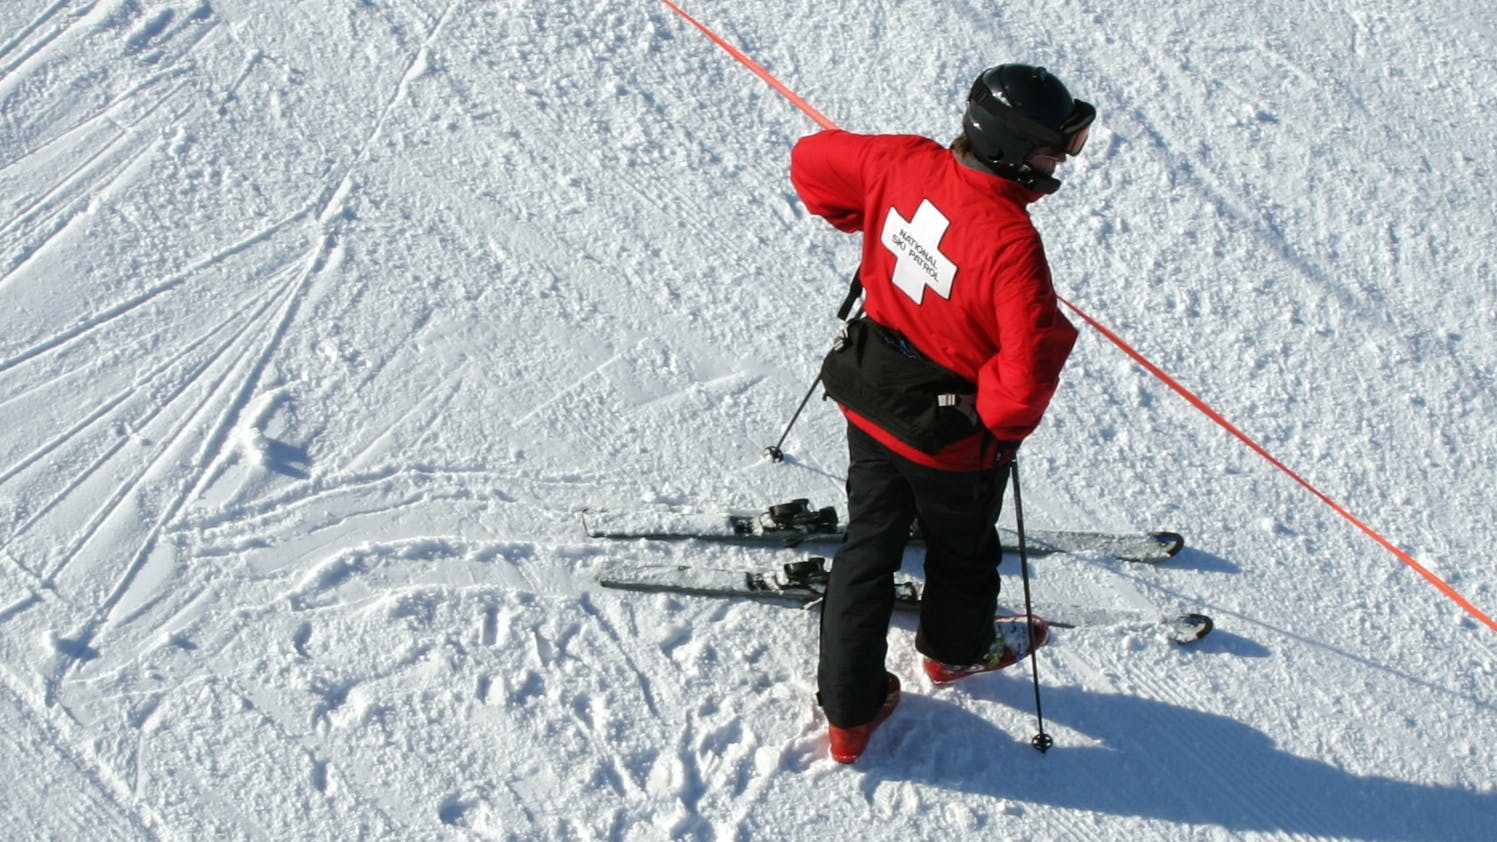 A member of the ski patrol checks a red boundary rope.